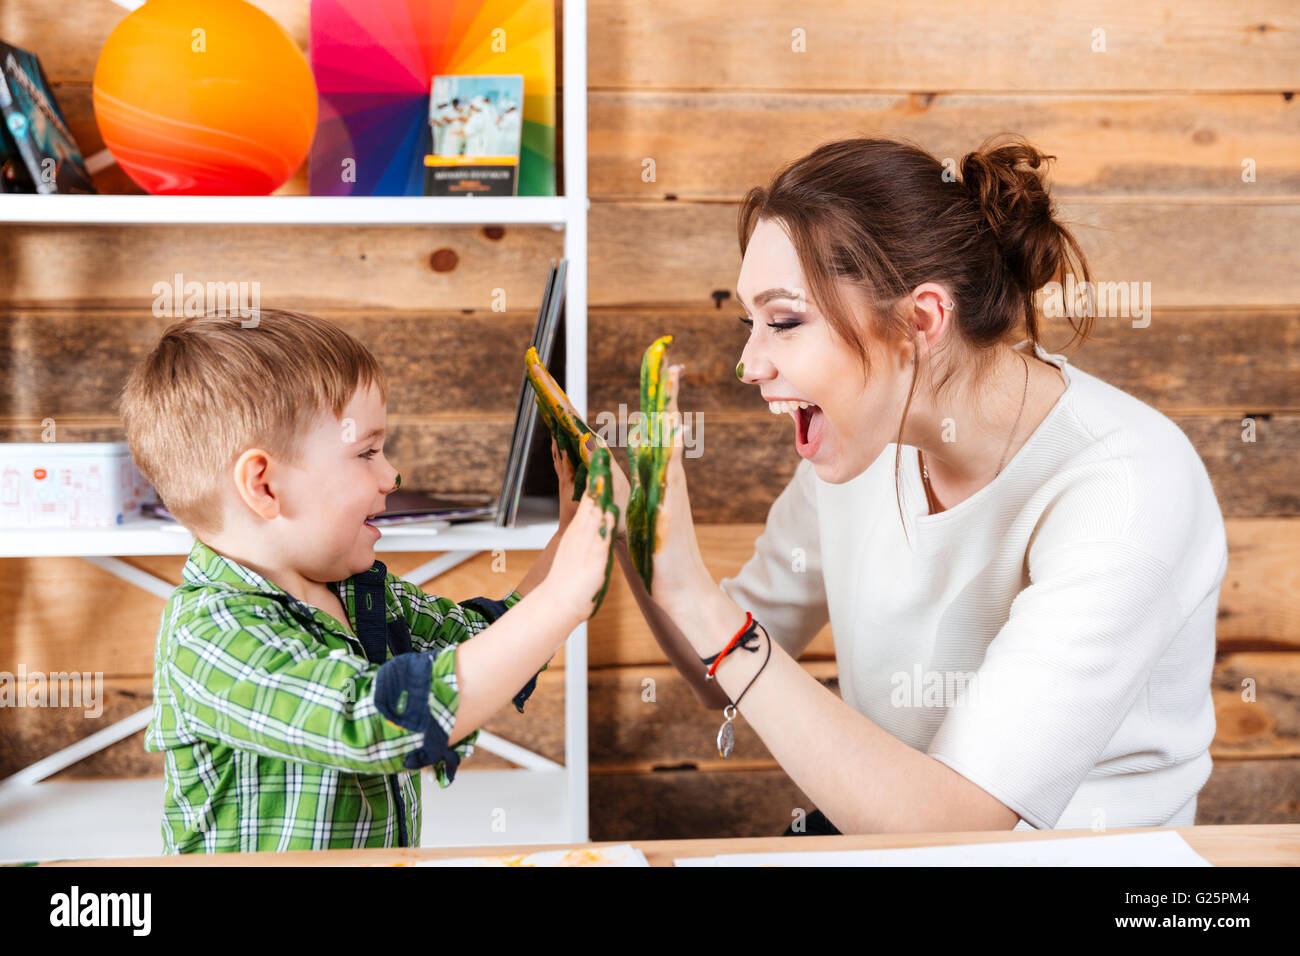 Glückliche junge Mutter und ihr kleiner Sohn geben hohe fünf mit bemalten Händen in bunten Farben Stockfoto